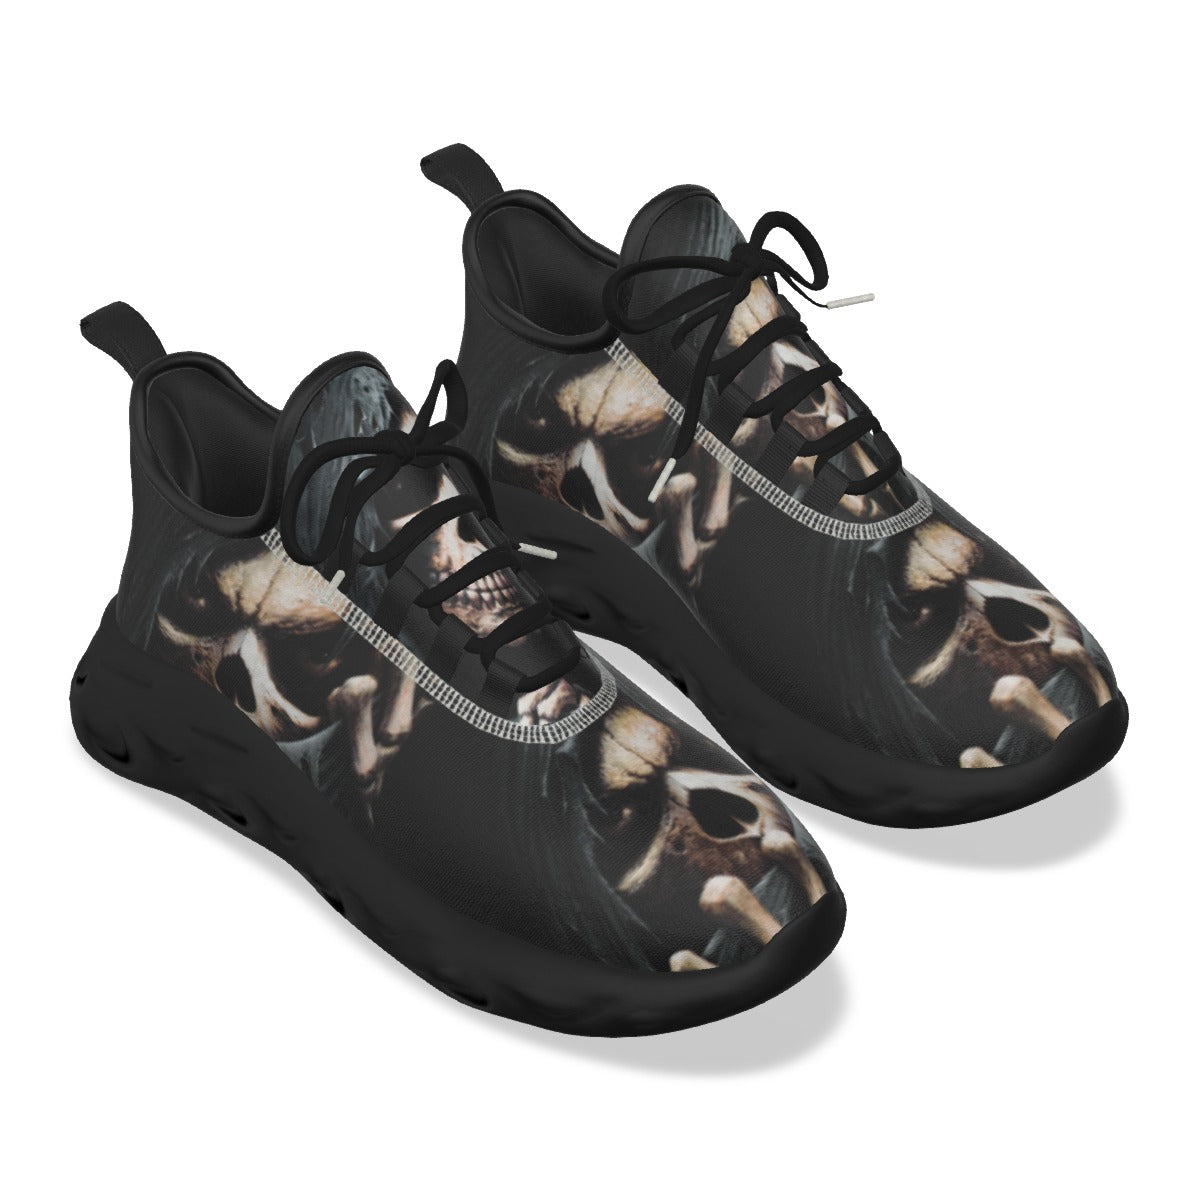 Grim reaper Halloween skeleton sneakers shoes